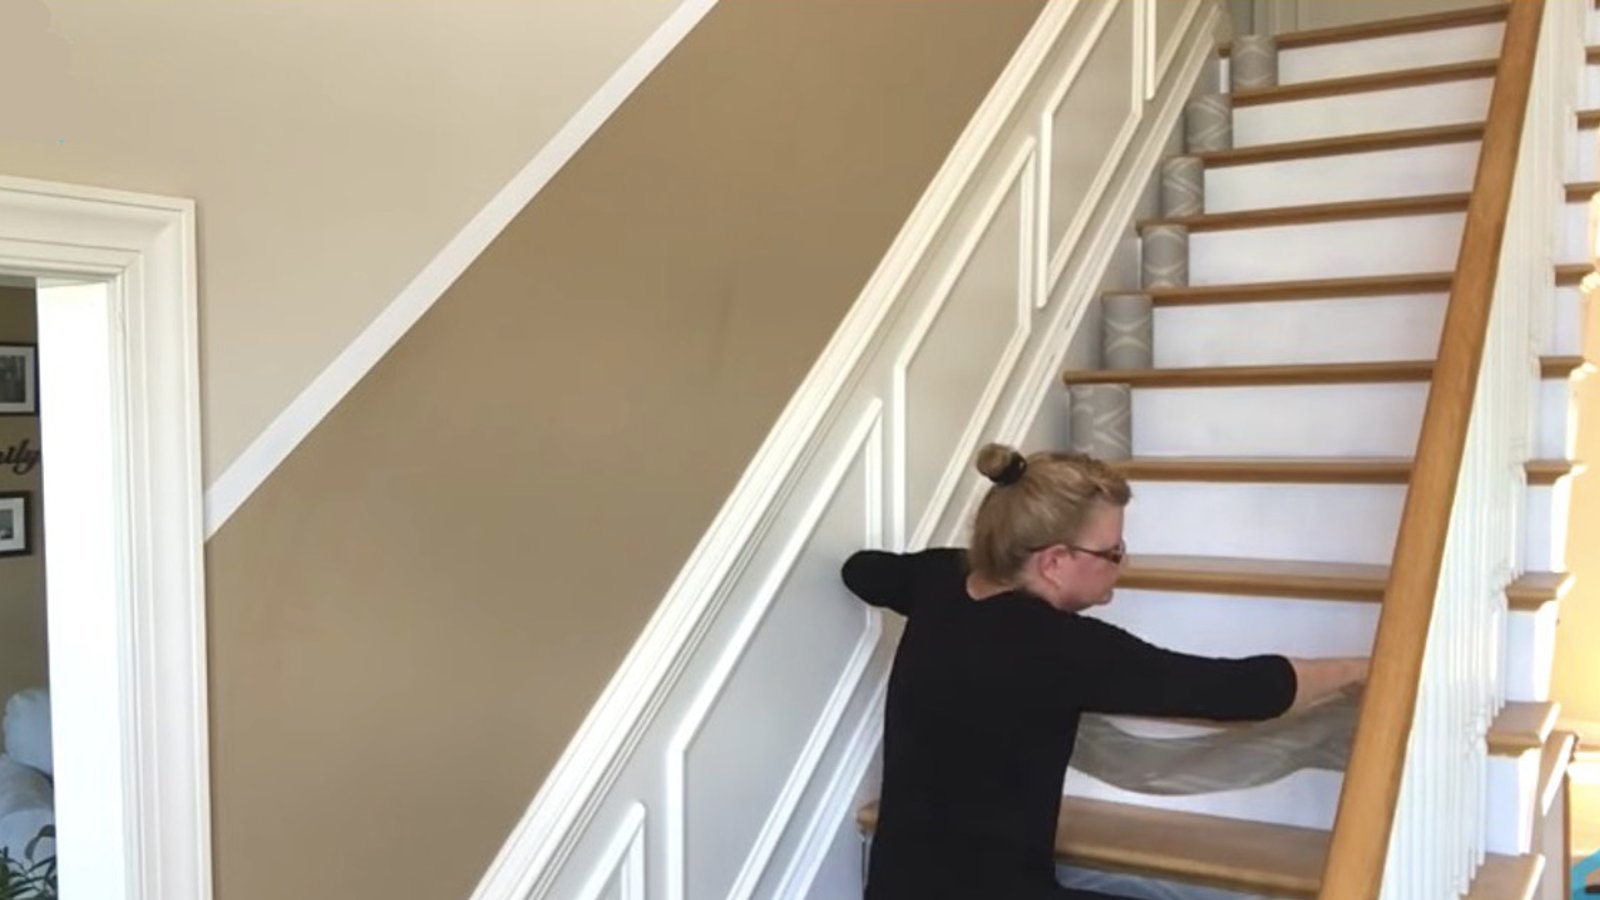 Changer le look d'un escalier avec du papier peint! 